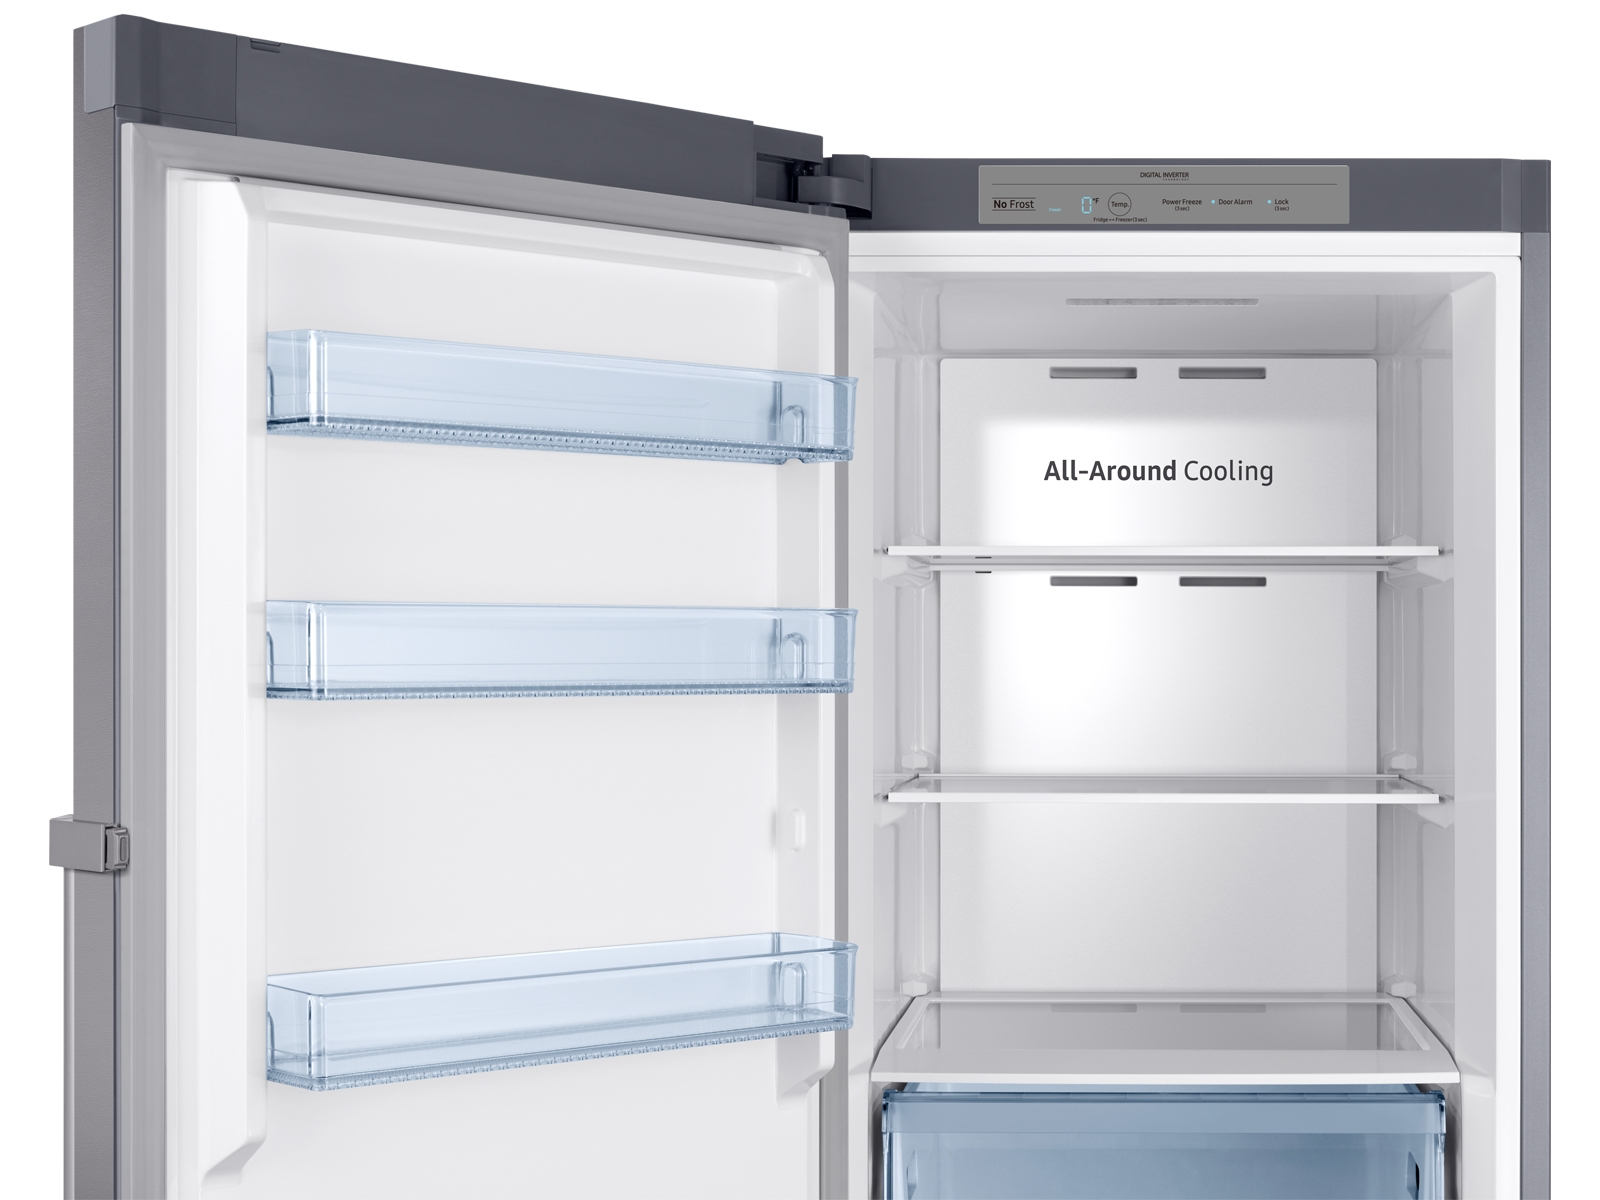 Congelador vertical con capacidad de 11.4 pies cúbicos con apariencia de acero inoxidable - RZ11M7074SA/AA | Samsung EE. UU.